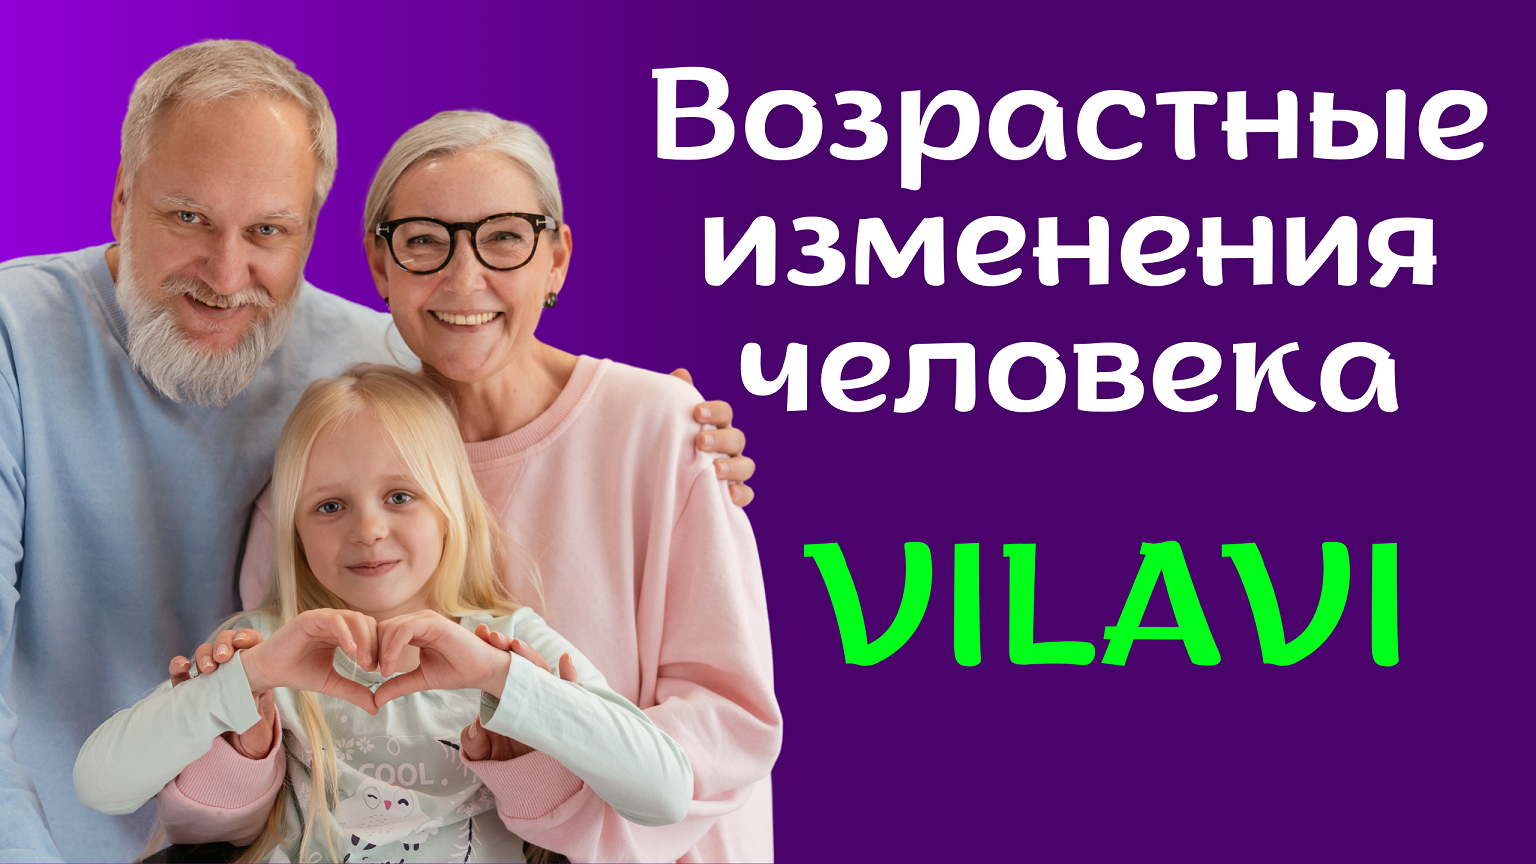 Возрастные изменения и продукты VILAVI